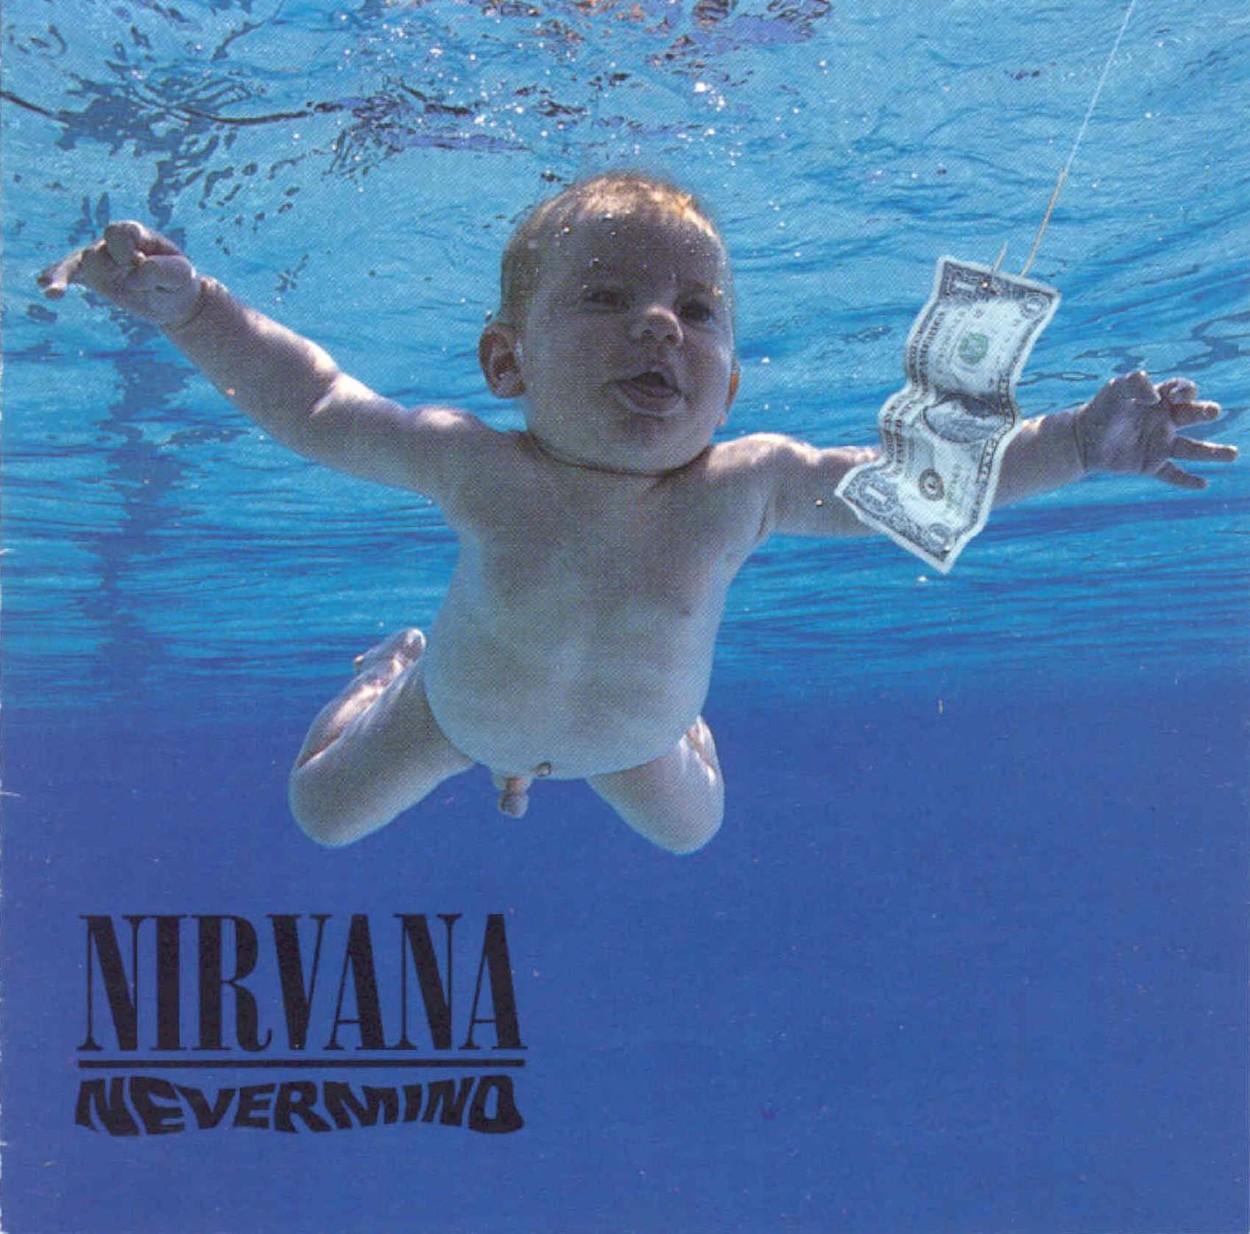 Spencer Elden este bărbatul care a dat în judecată trupa Nirvana. El a apărut pe coperta albumului "Nevermind" când era bebeluș